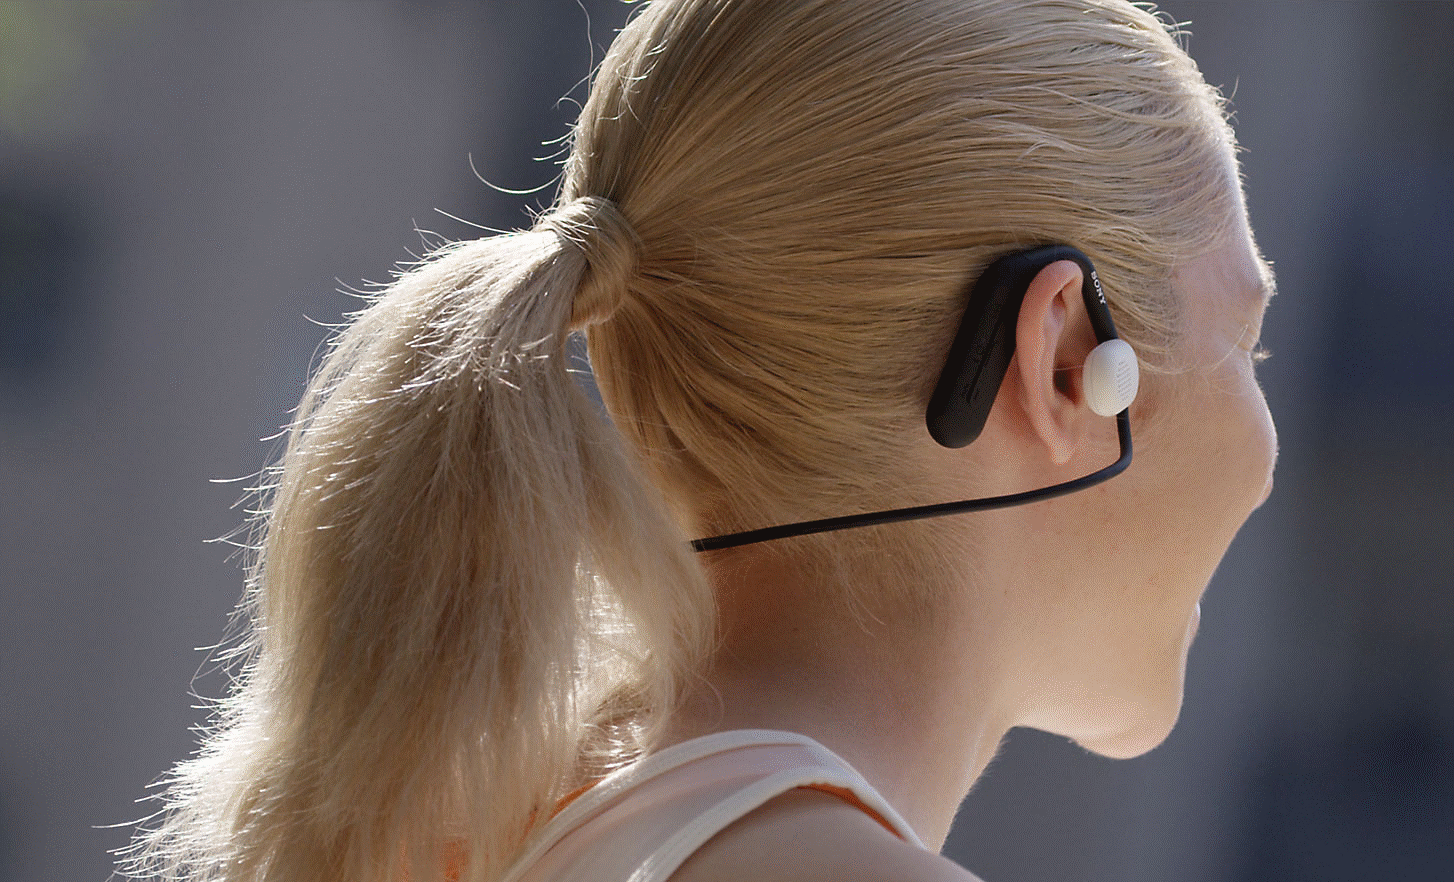 ภาพผู้หญิงที่สวมใส่หูฟัง Sony Float Run ซึ่งถ่ายจากด้านหลัง